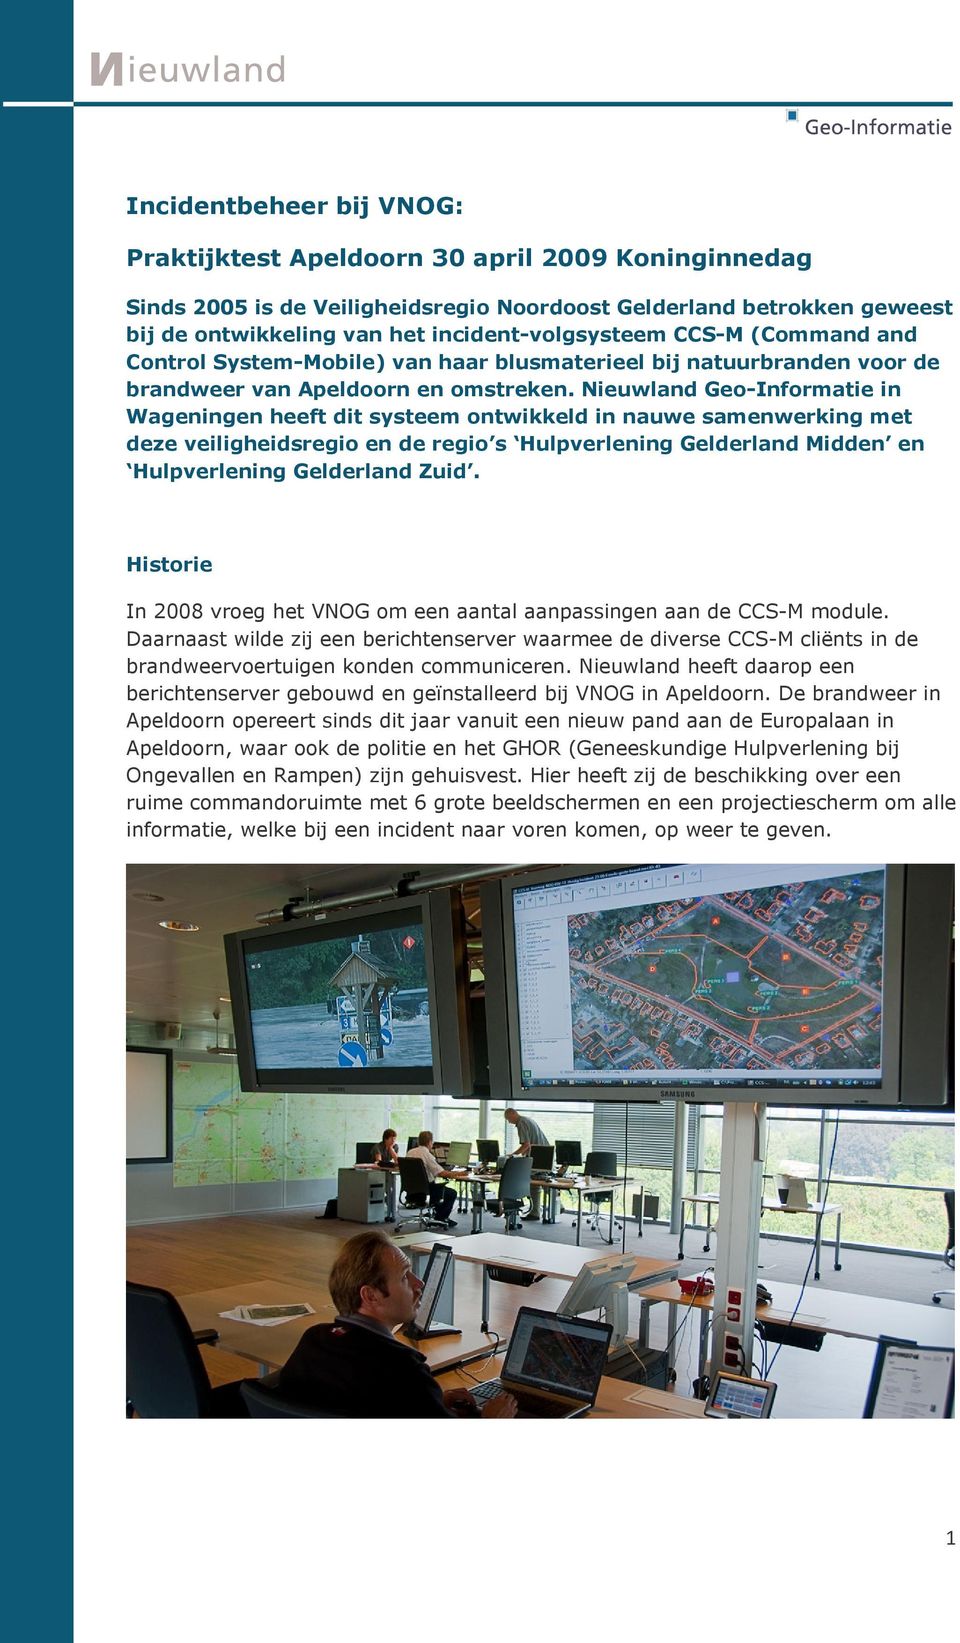 Nieuwland Geo-Informatie in Wageningen heeft dit systeem ontwikkeld in nauwe samenwerking met deze veiligheidsregio en de regio s Hulpverlening Gelderland Midden en Hulpverlening Gelderland Zuid.